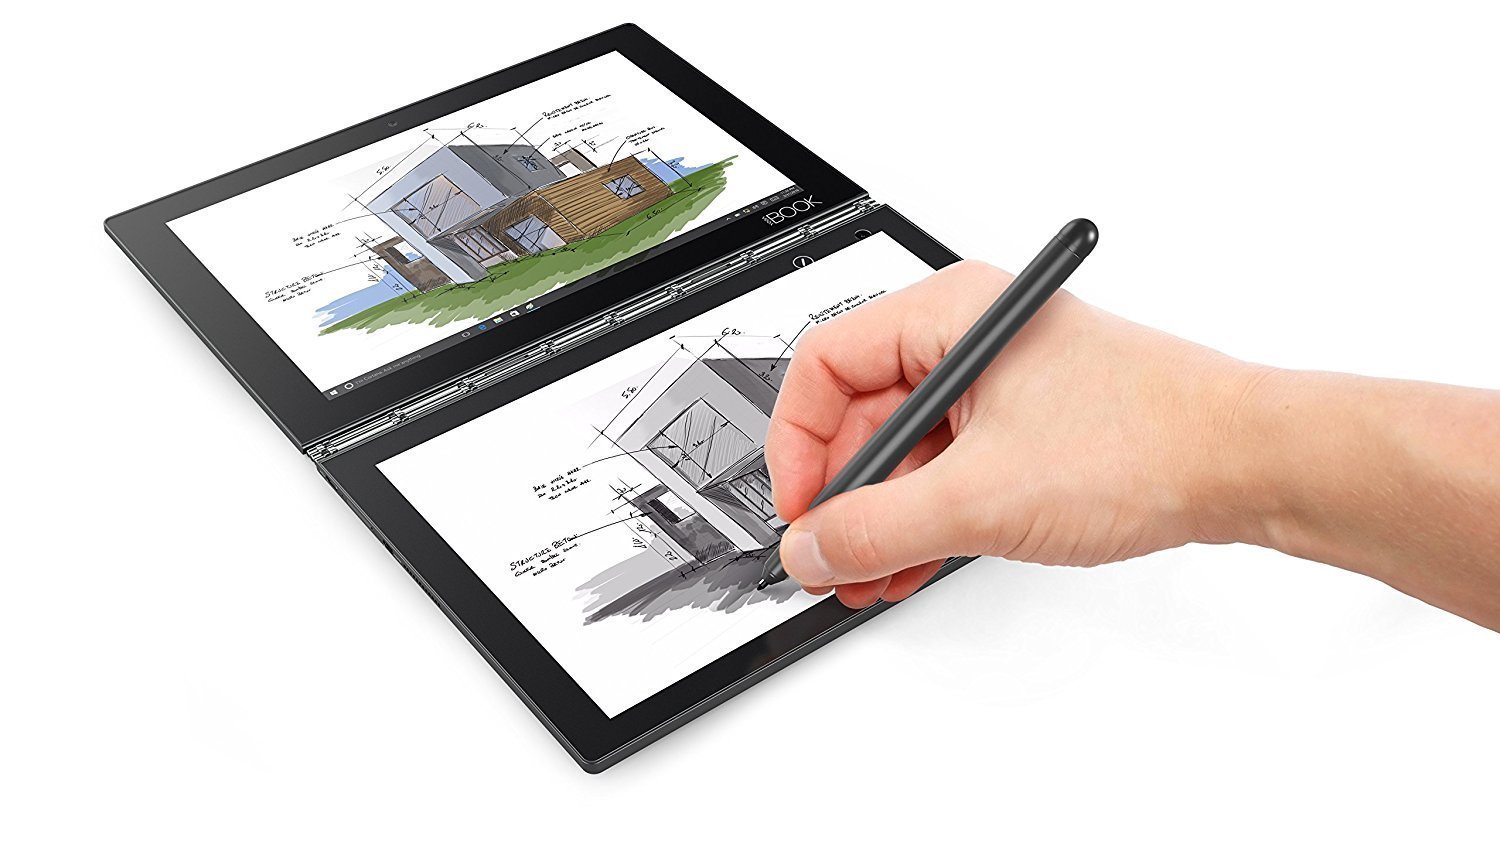 Come scegliere ed acquistare il migliore tablet per disegnare a